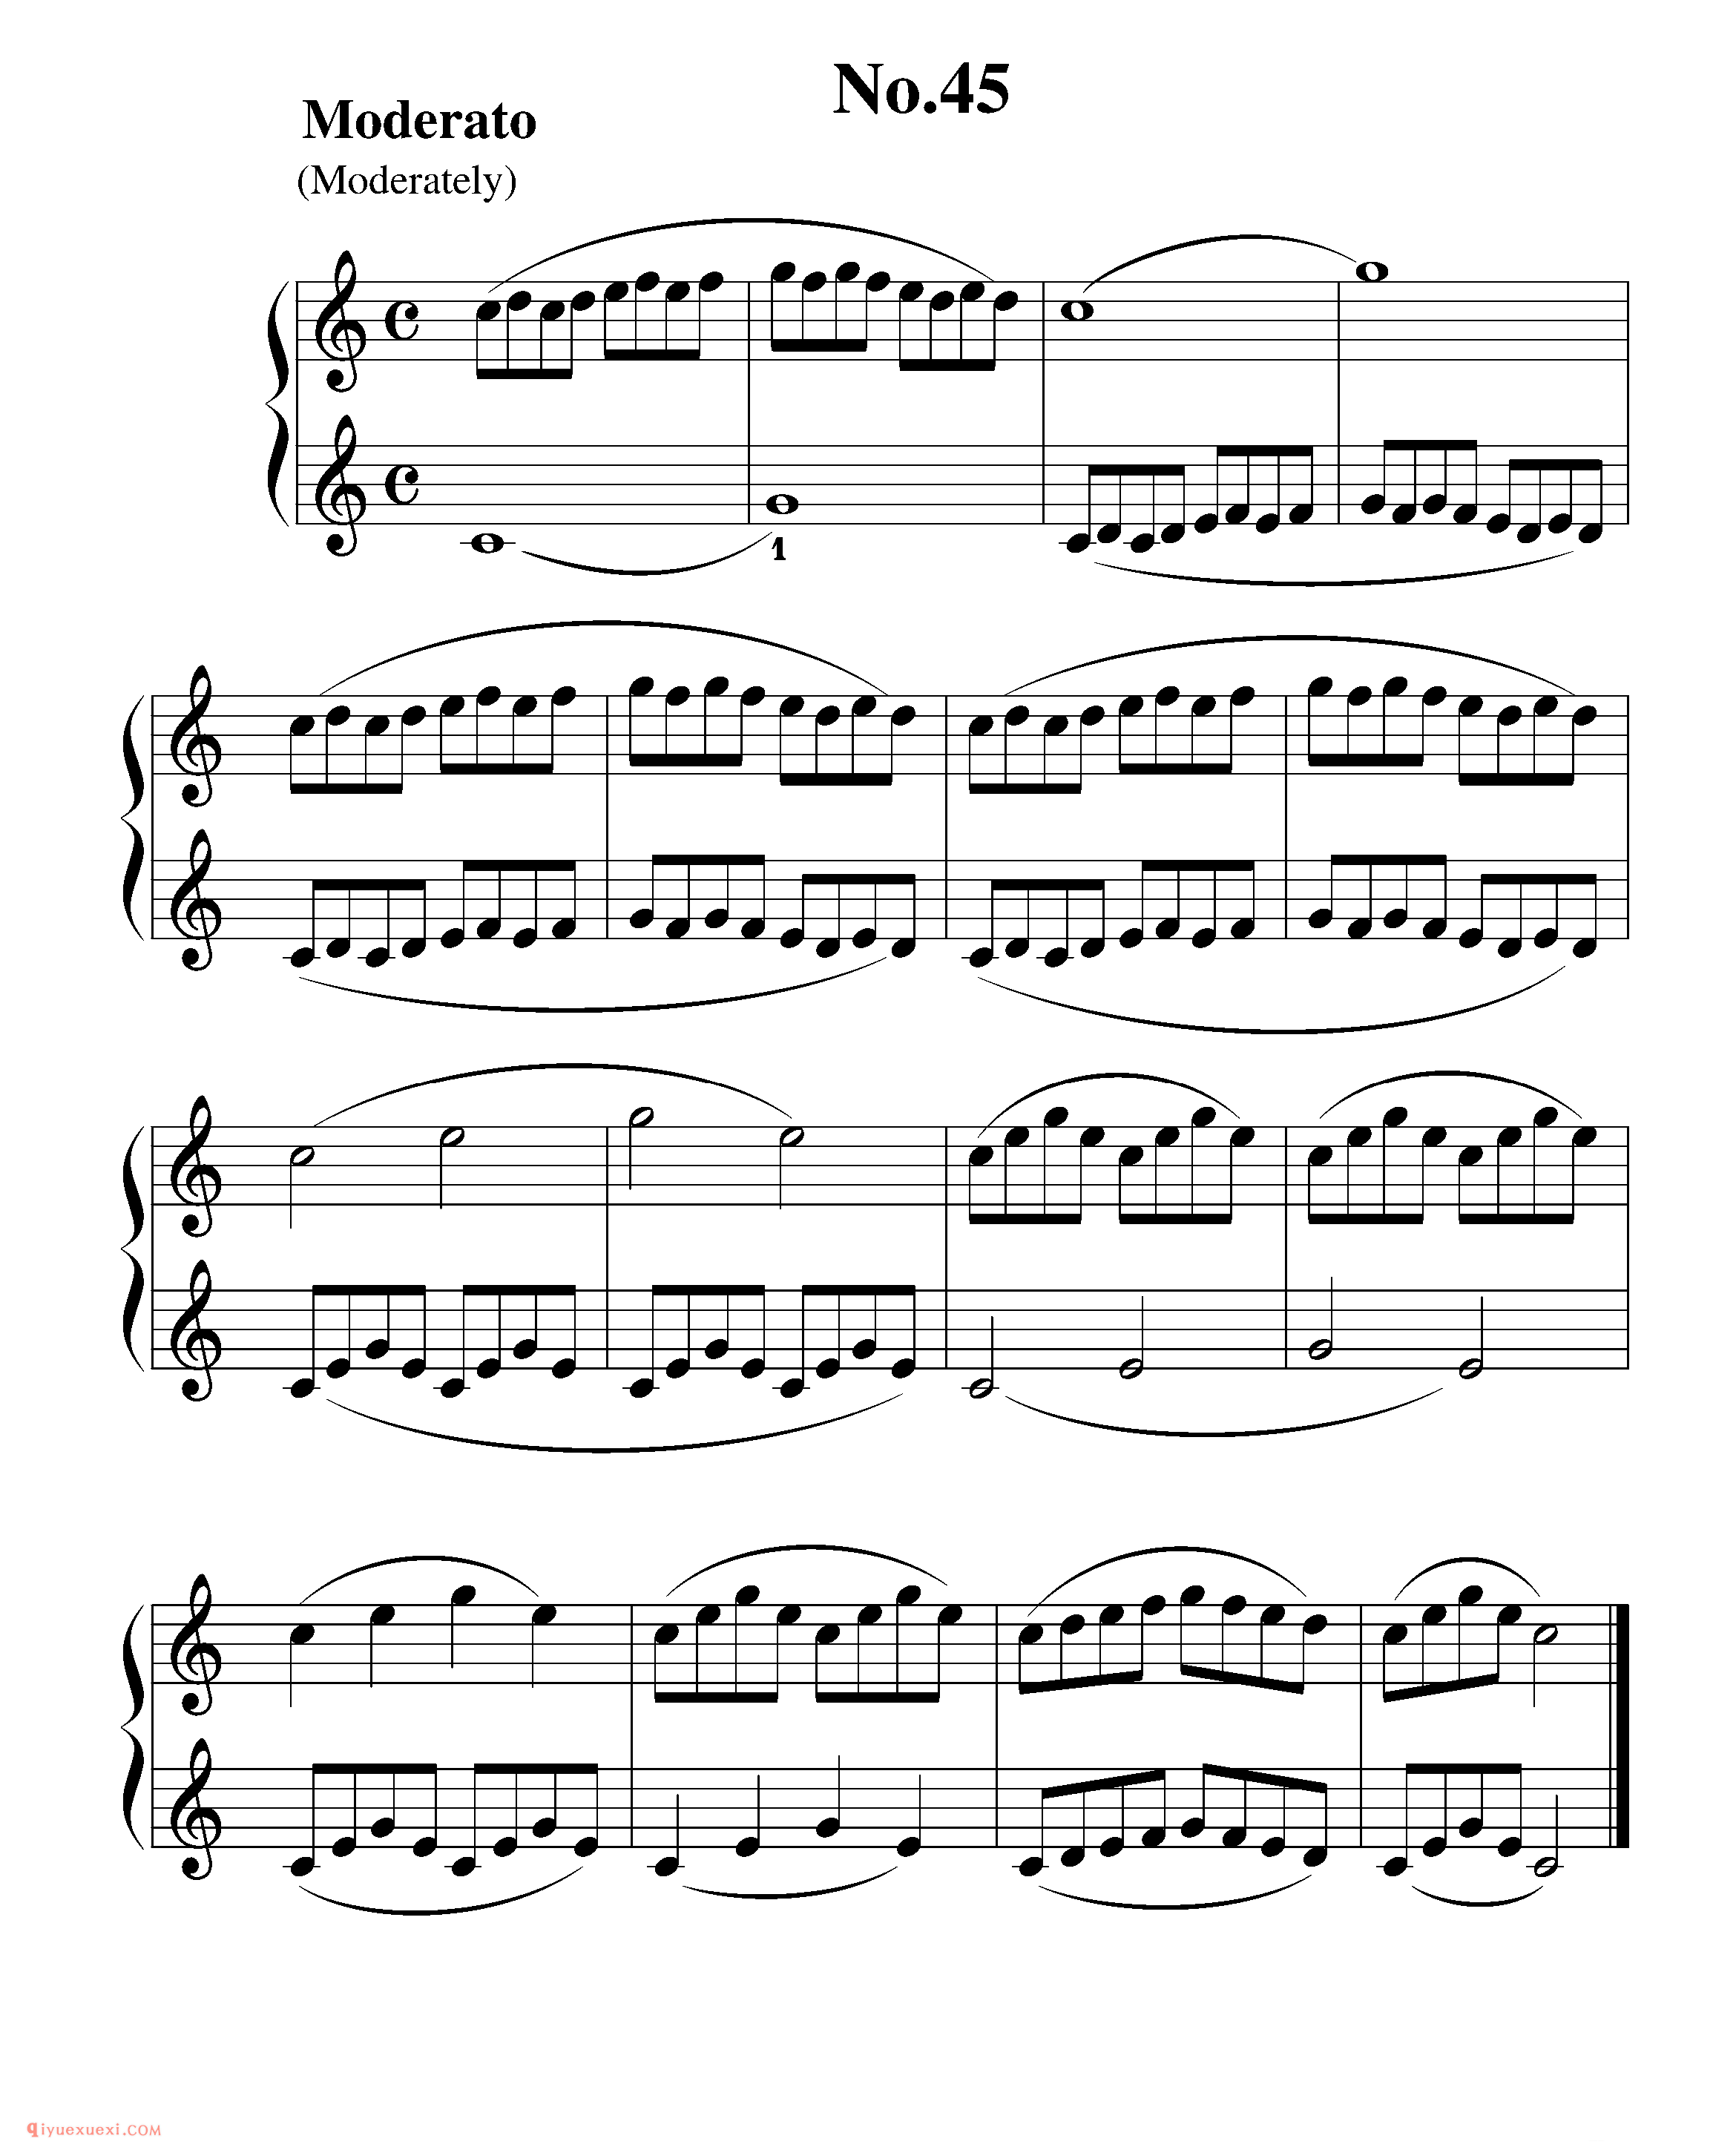 拜厄钢琴练习曲NO.45_拜尔(拜厄)钢琴基本教程练习曲第45首_五线谱